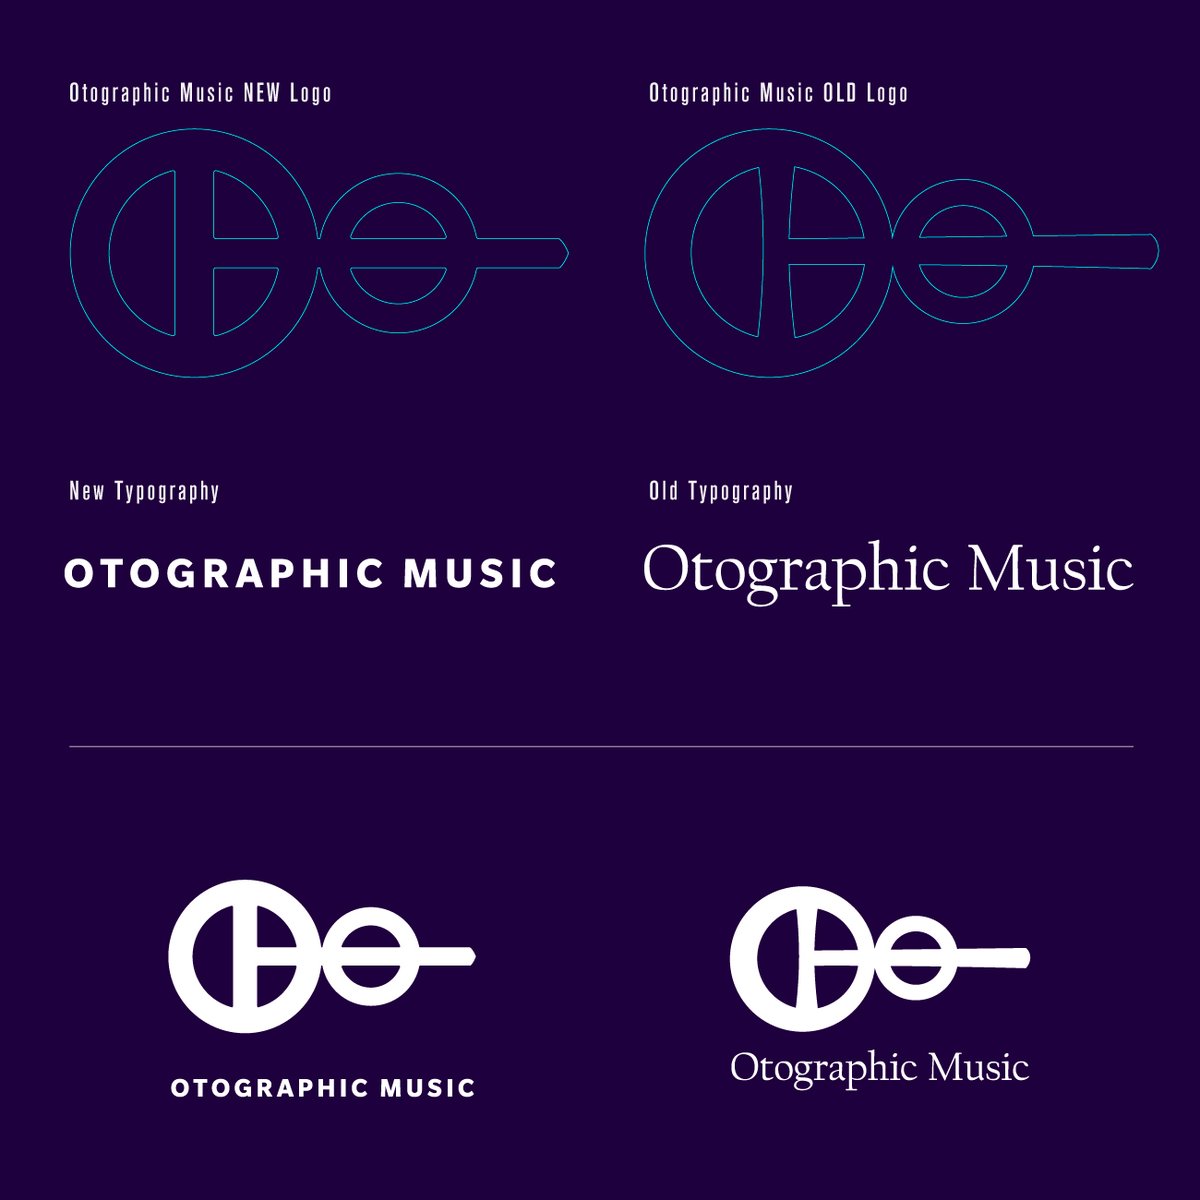 Otographic Musicのwebをリニューアルしました！
otographicmusic.com
実装は@lawy
 
合わせて10年の節目としてロゴ一式とカラーも新たにしました。
可読性と視認性の向上、細かい箇所のバランス調整をしています。先日発売されたOtographiesにもこちらを使っていますよ！
x.com/otographic/sta…